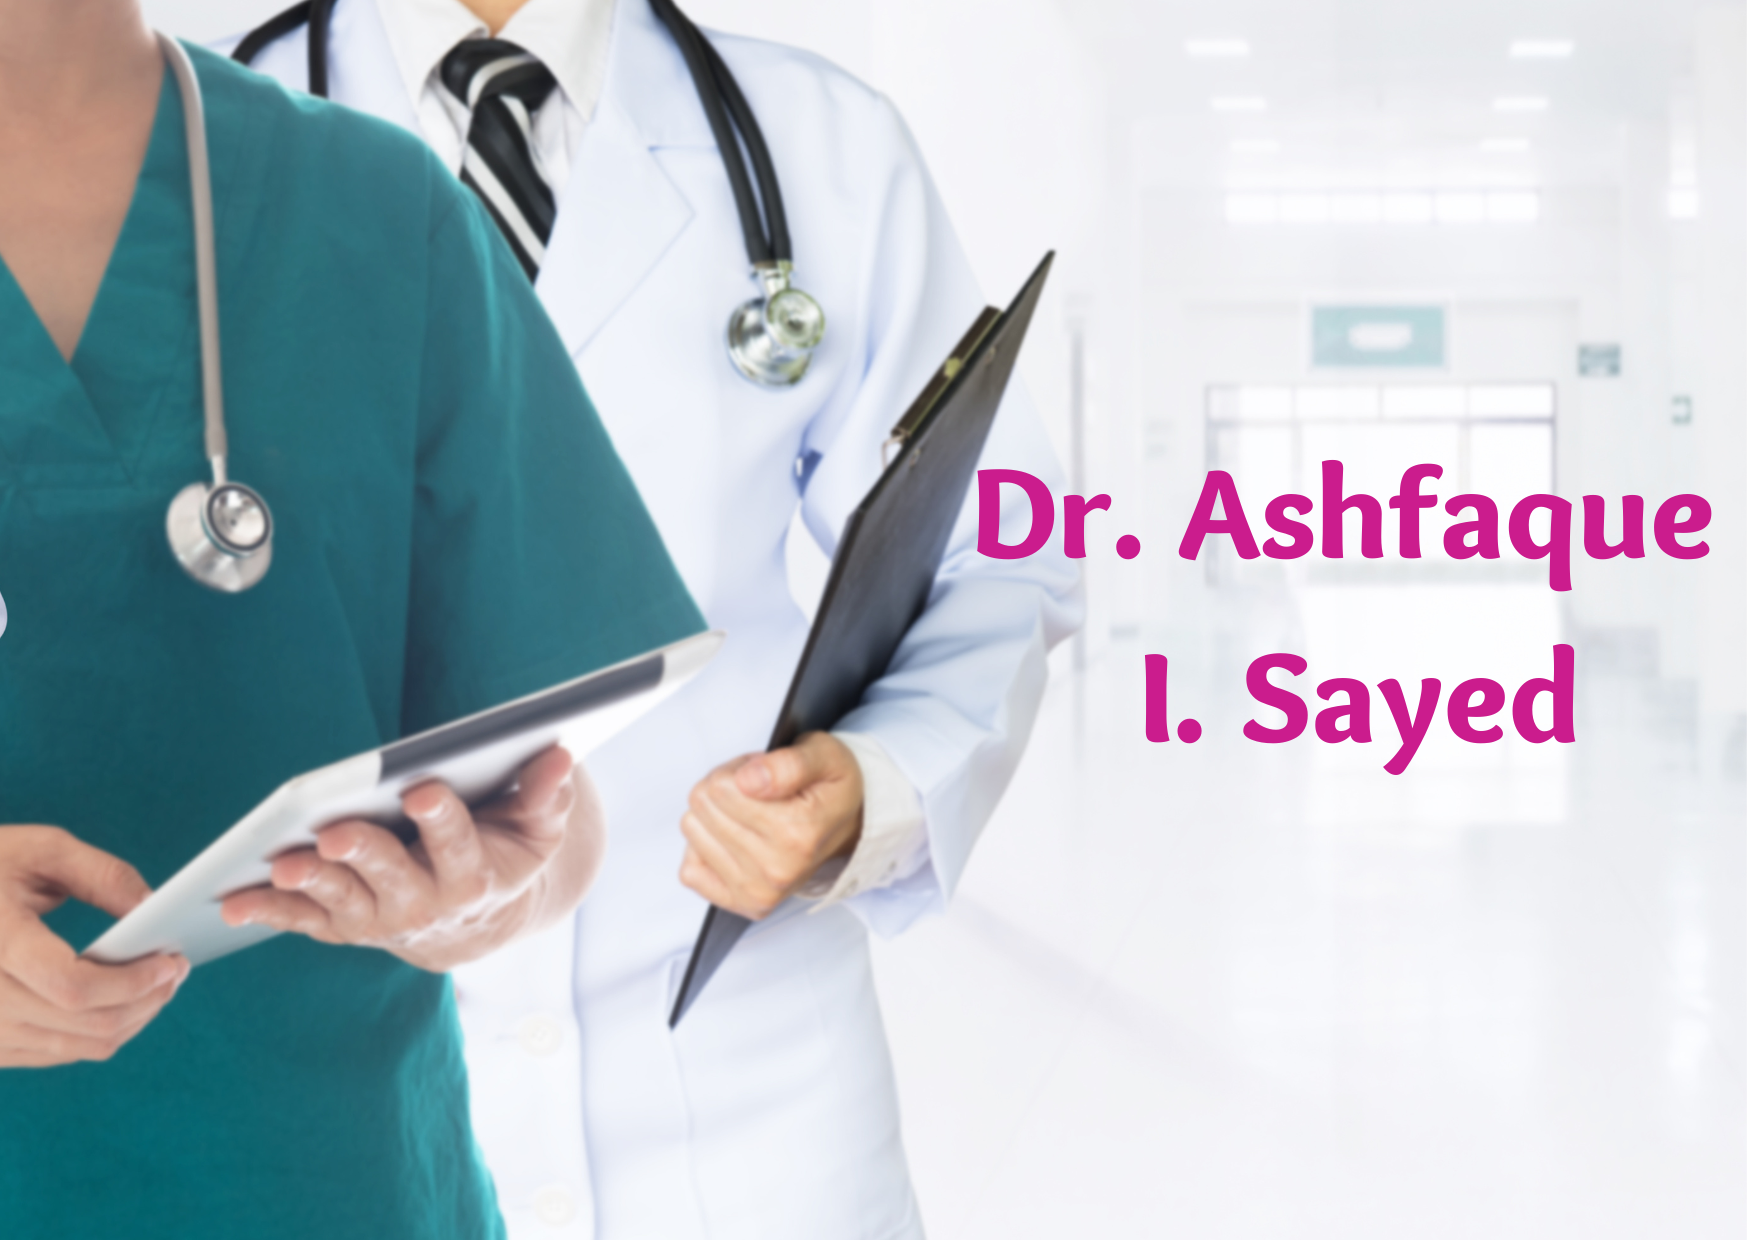 Dr. Ashfaque I. Sayed,   